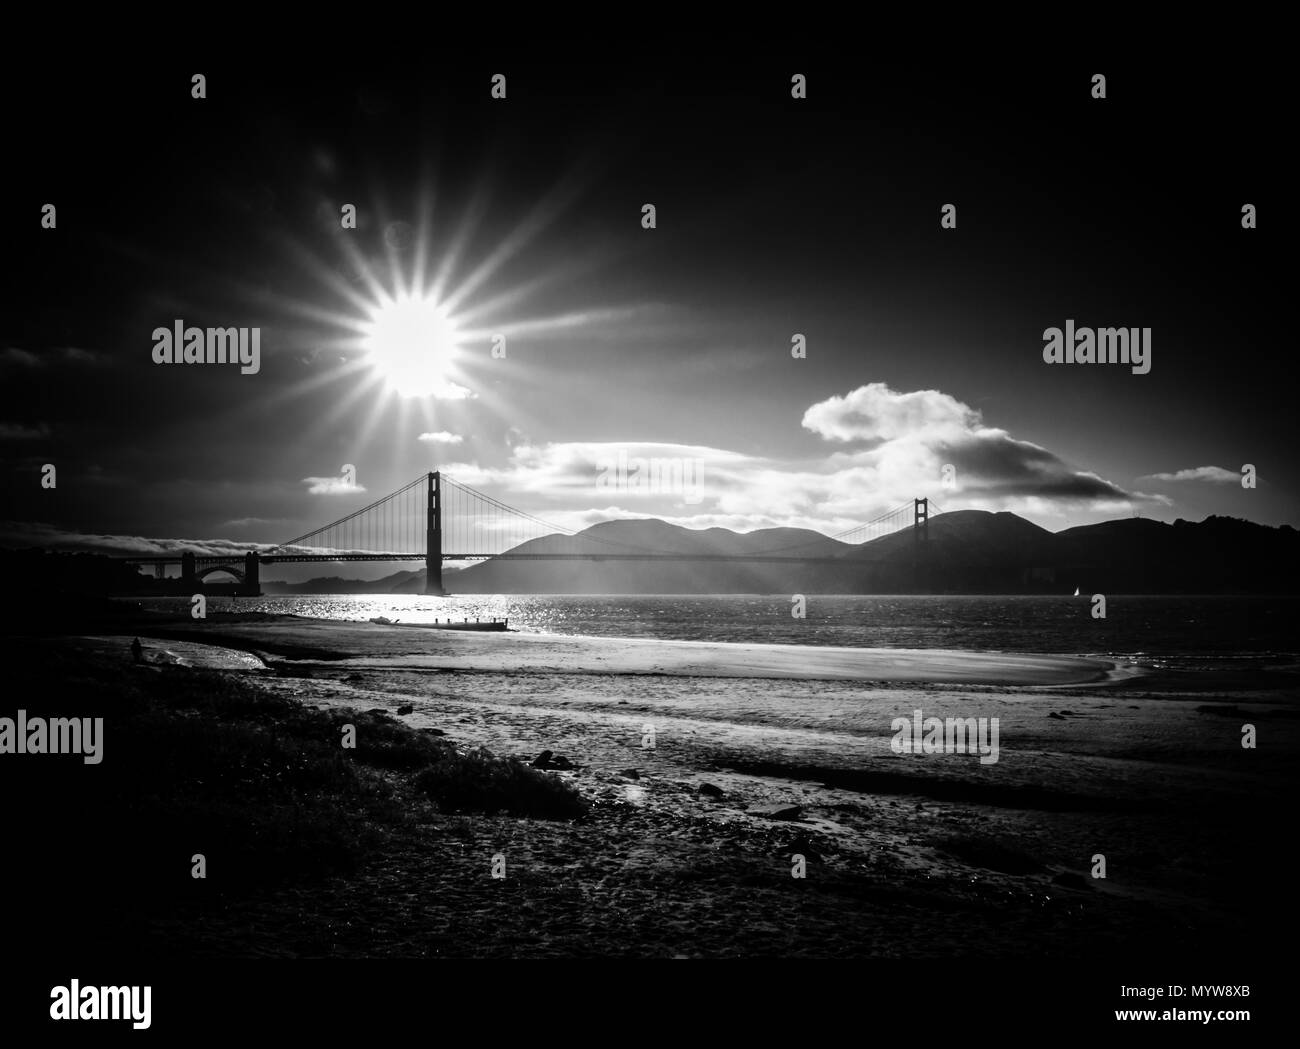 Dramatische Retro Style schwarz-weiß Bild von der Golden Gate Bridge in San Francisco bei Sonnenuntergang mit Kopie Raum Stockfoto